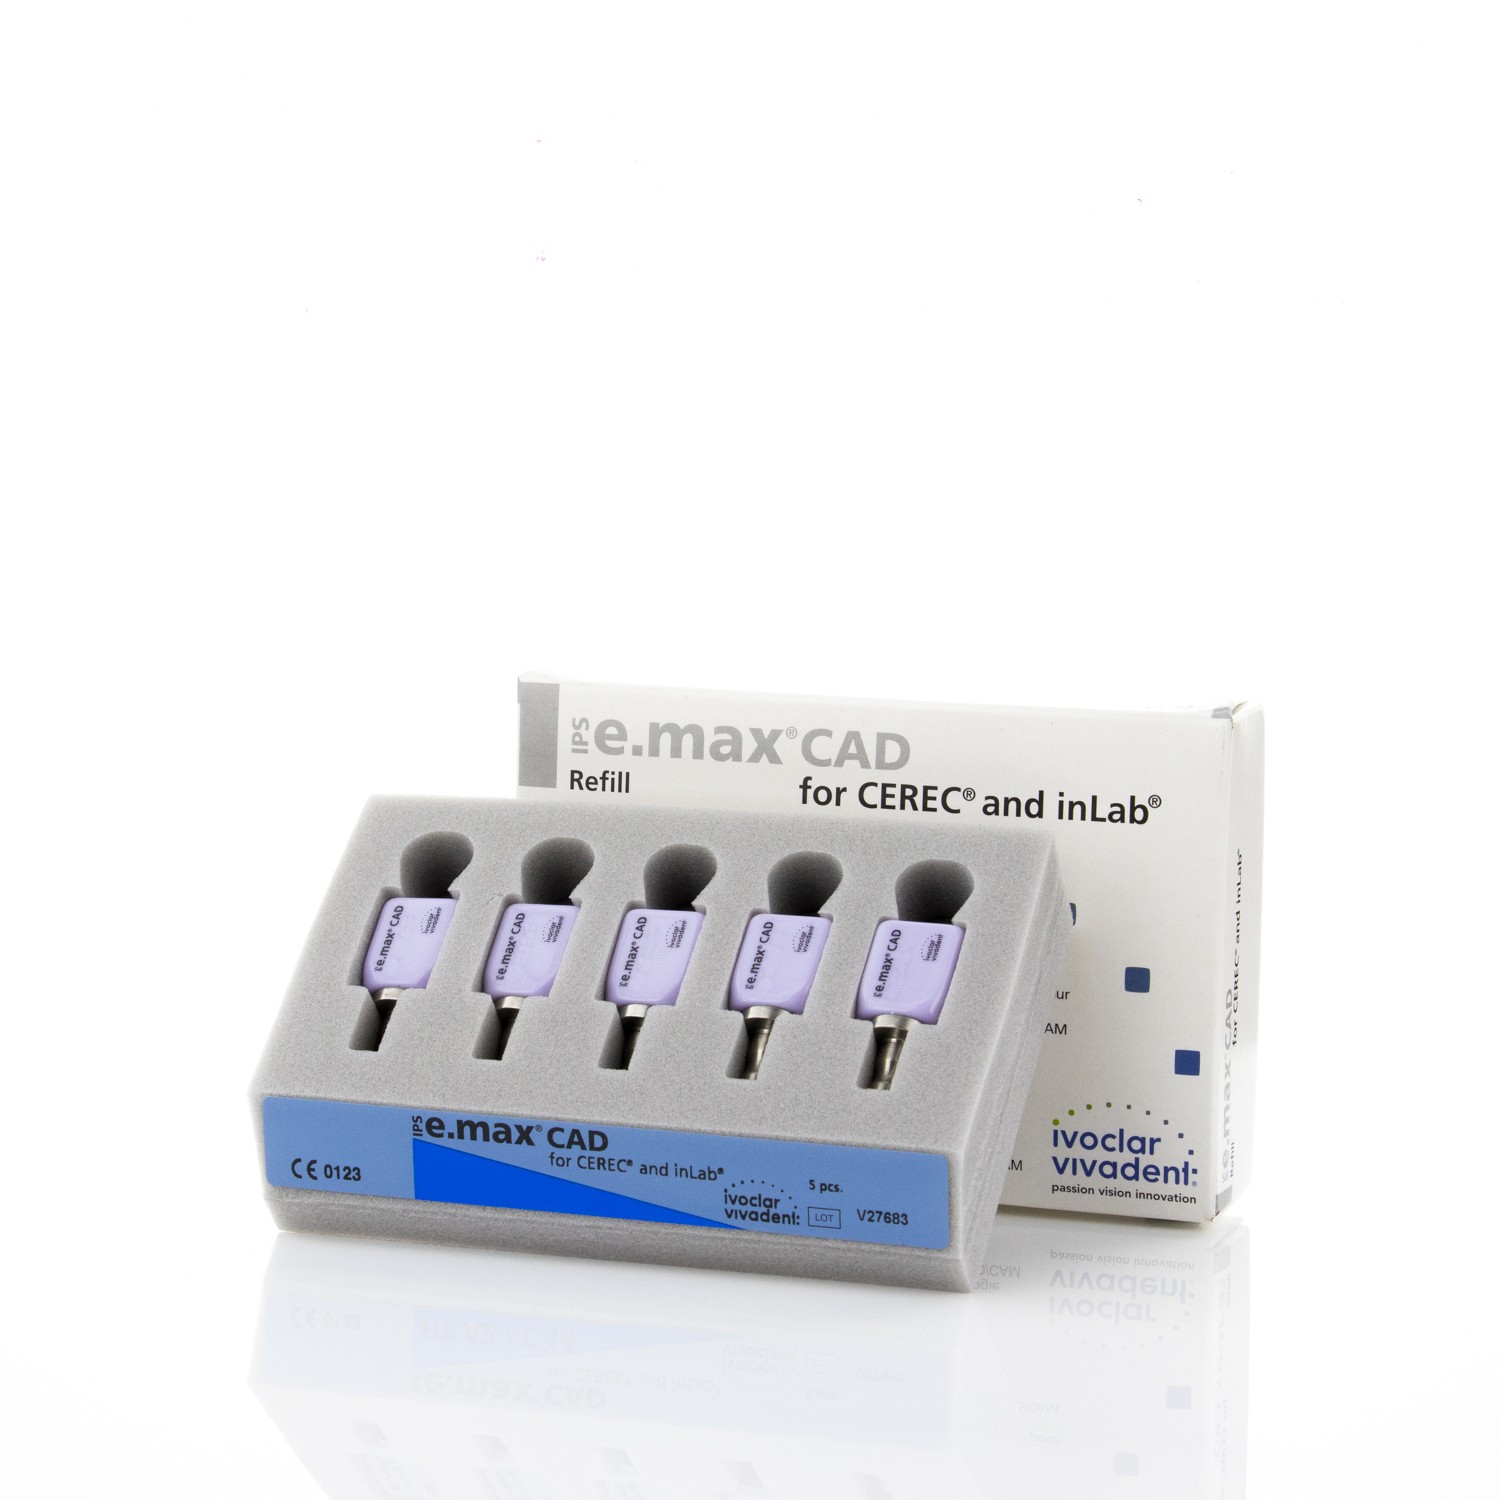 IPS E.MAX CAD CEREC/INLAB 605319 LT I12 A2 - 5 Stk